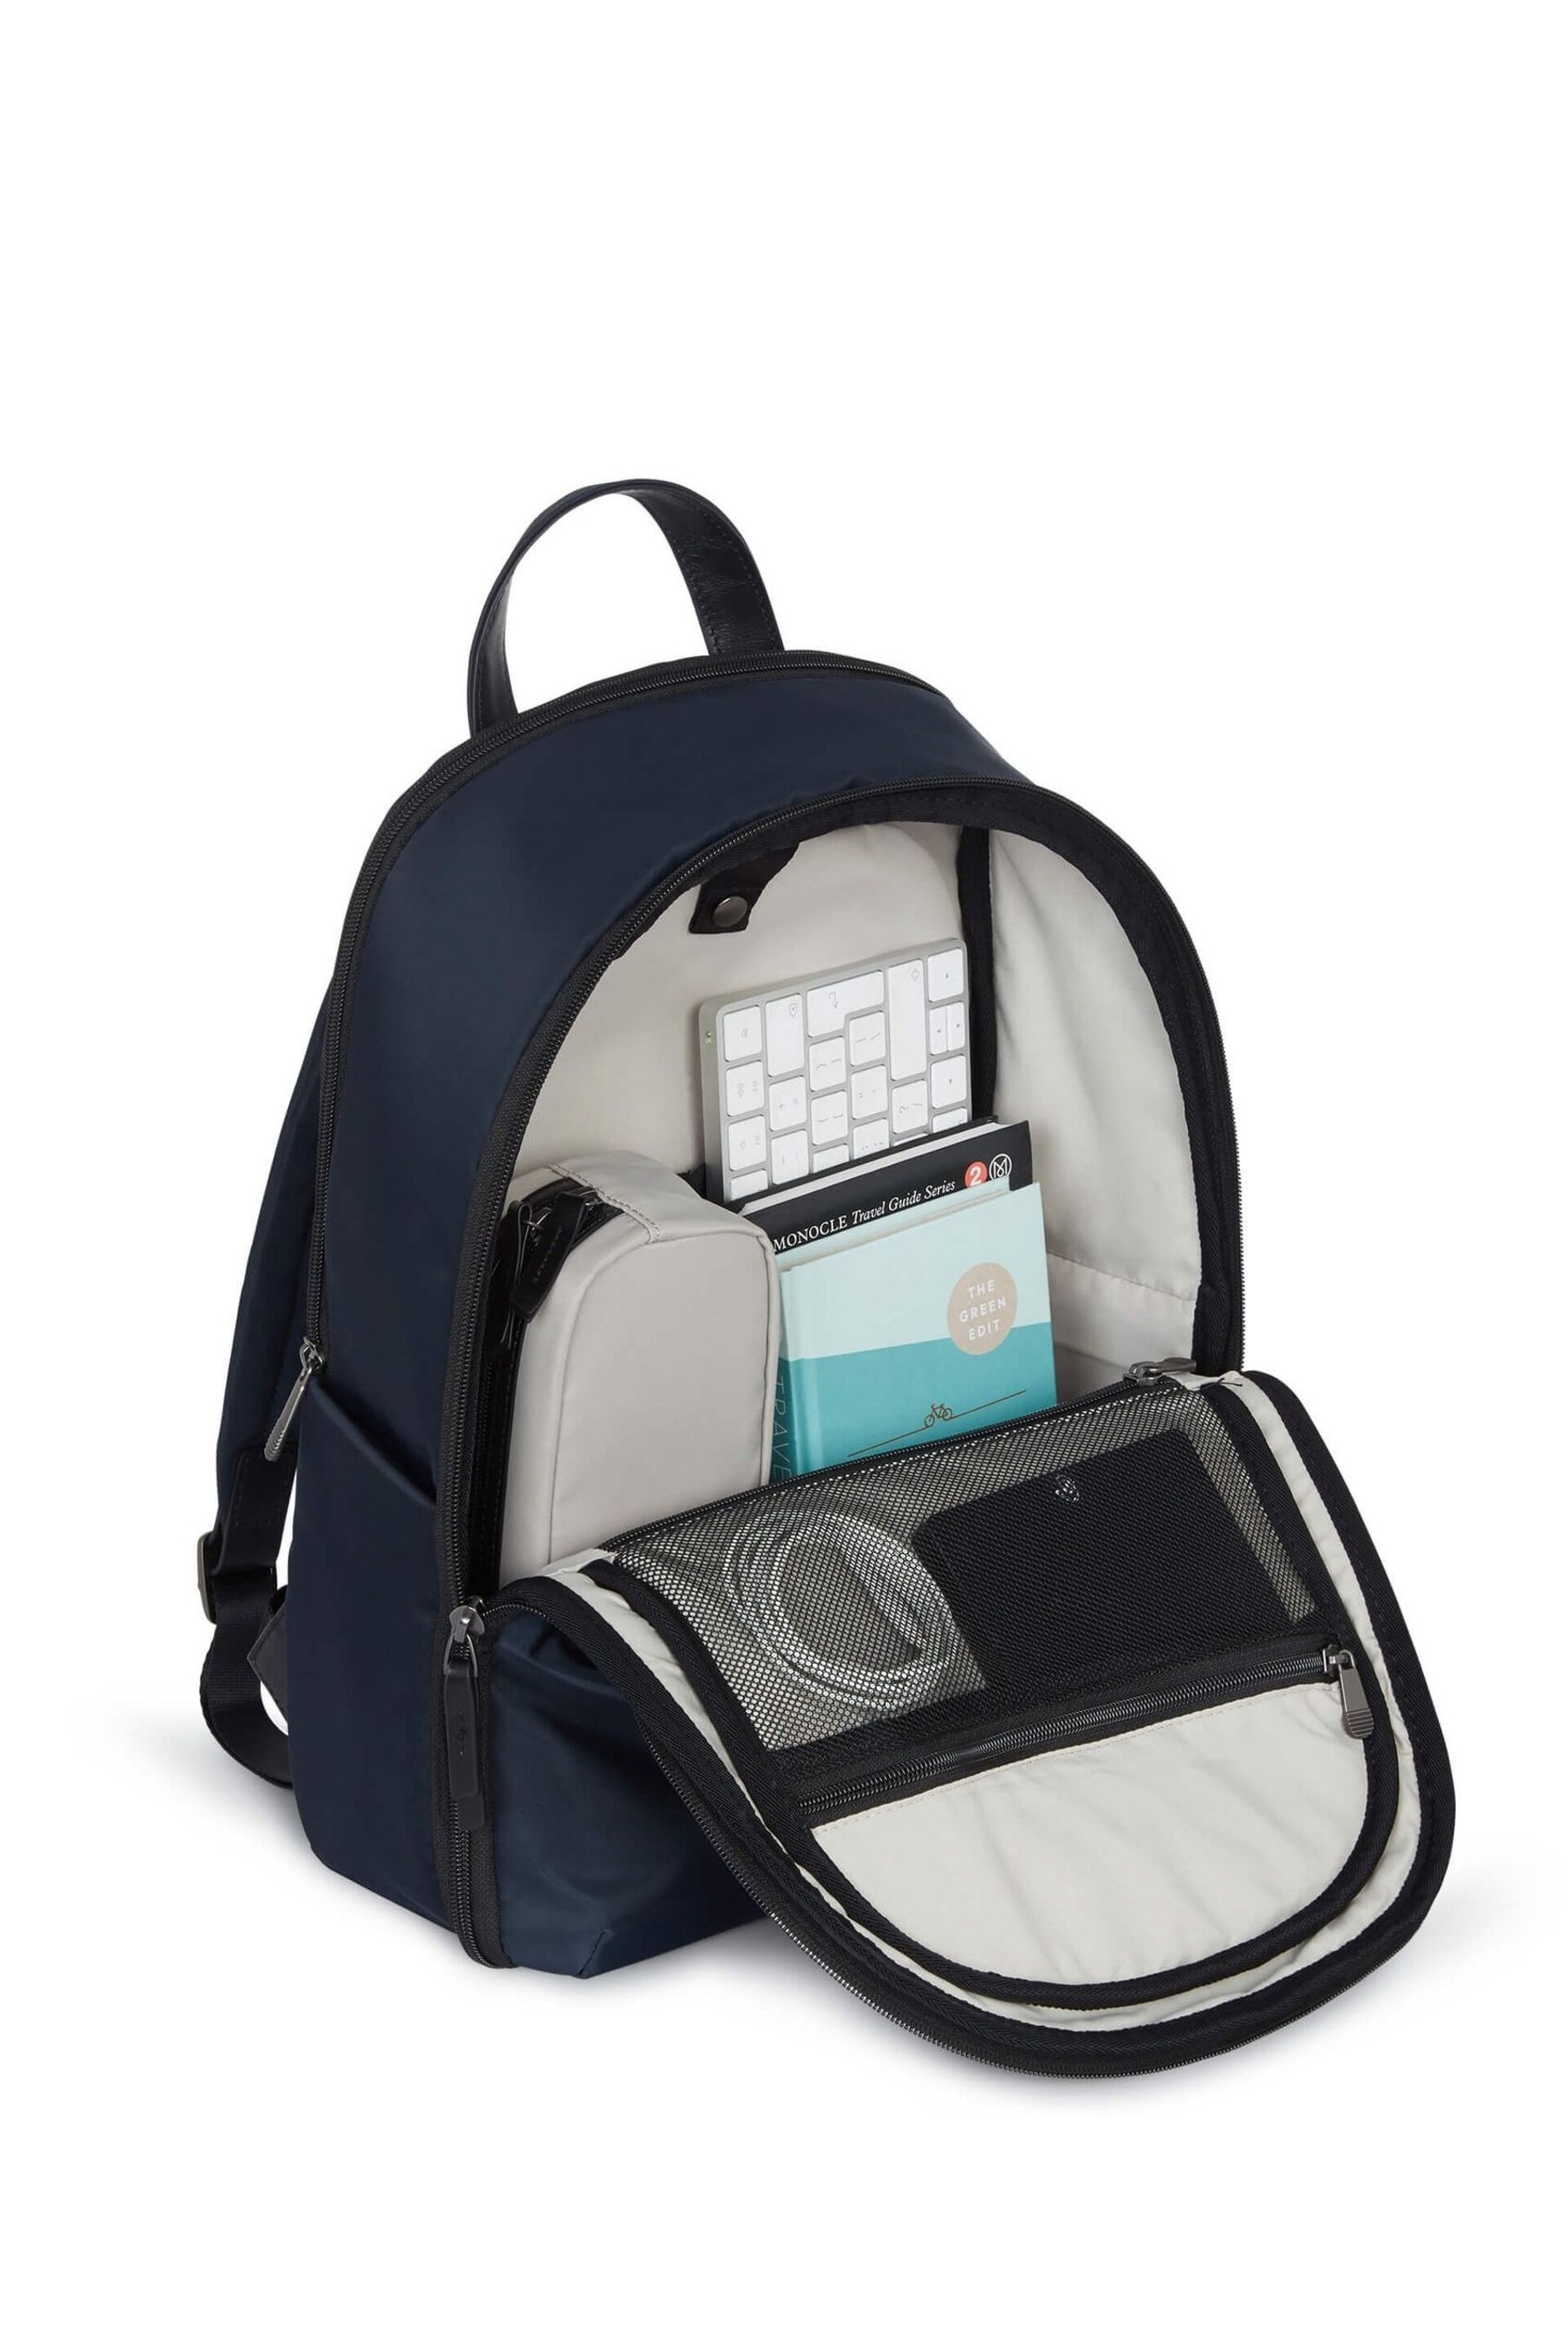 Antler Blue Chelsea Large Backpack - Image 5 of 5